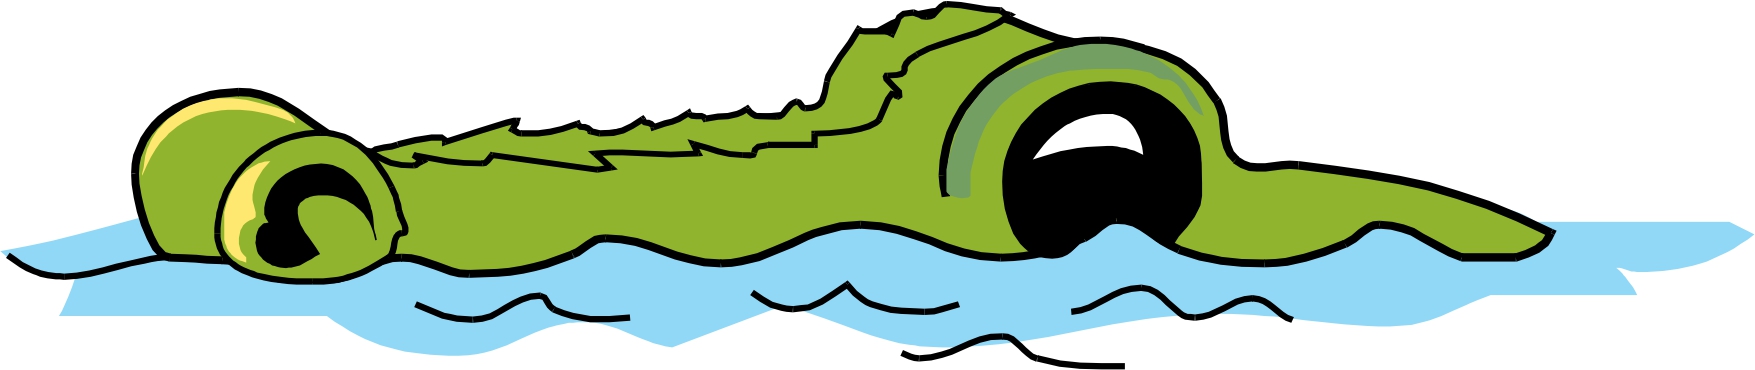 Cartoon Pictures Of Alligators